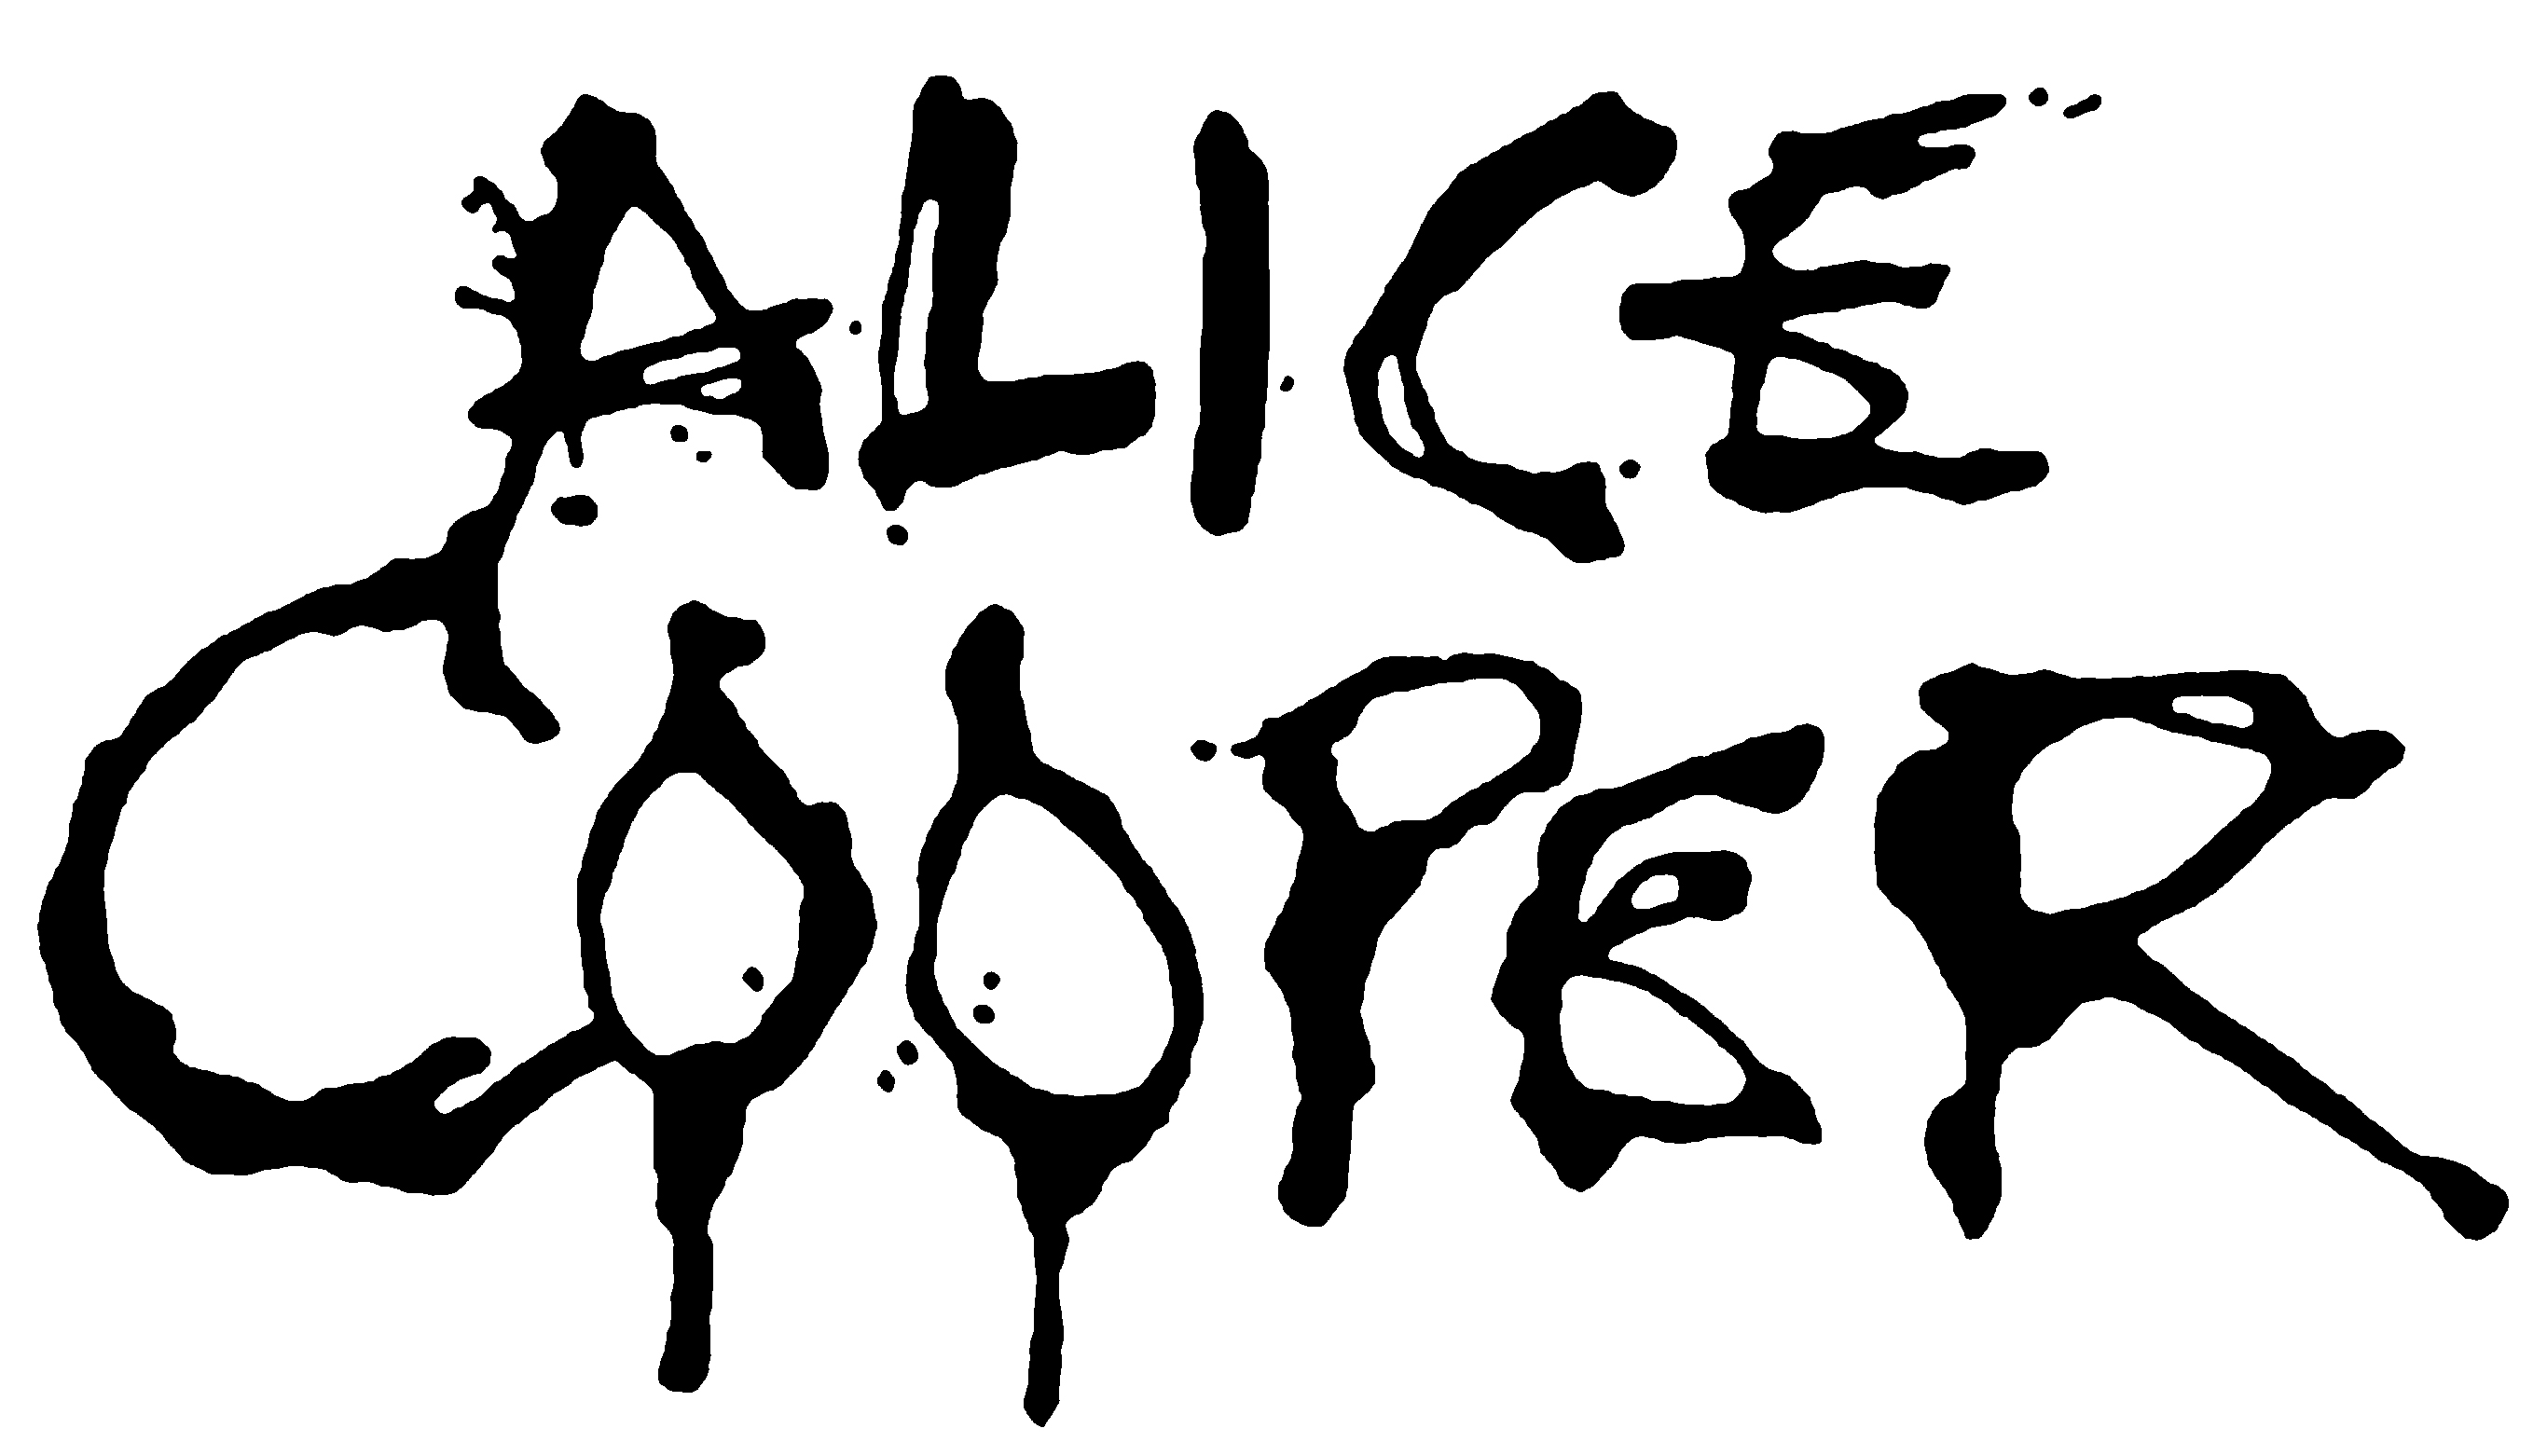 Alice Cooper Announces Summer 2018 Tour